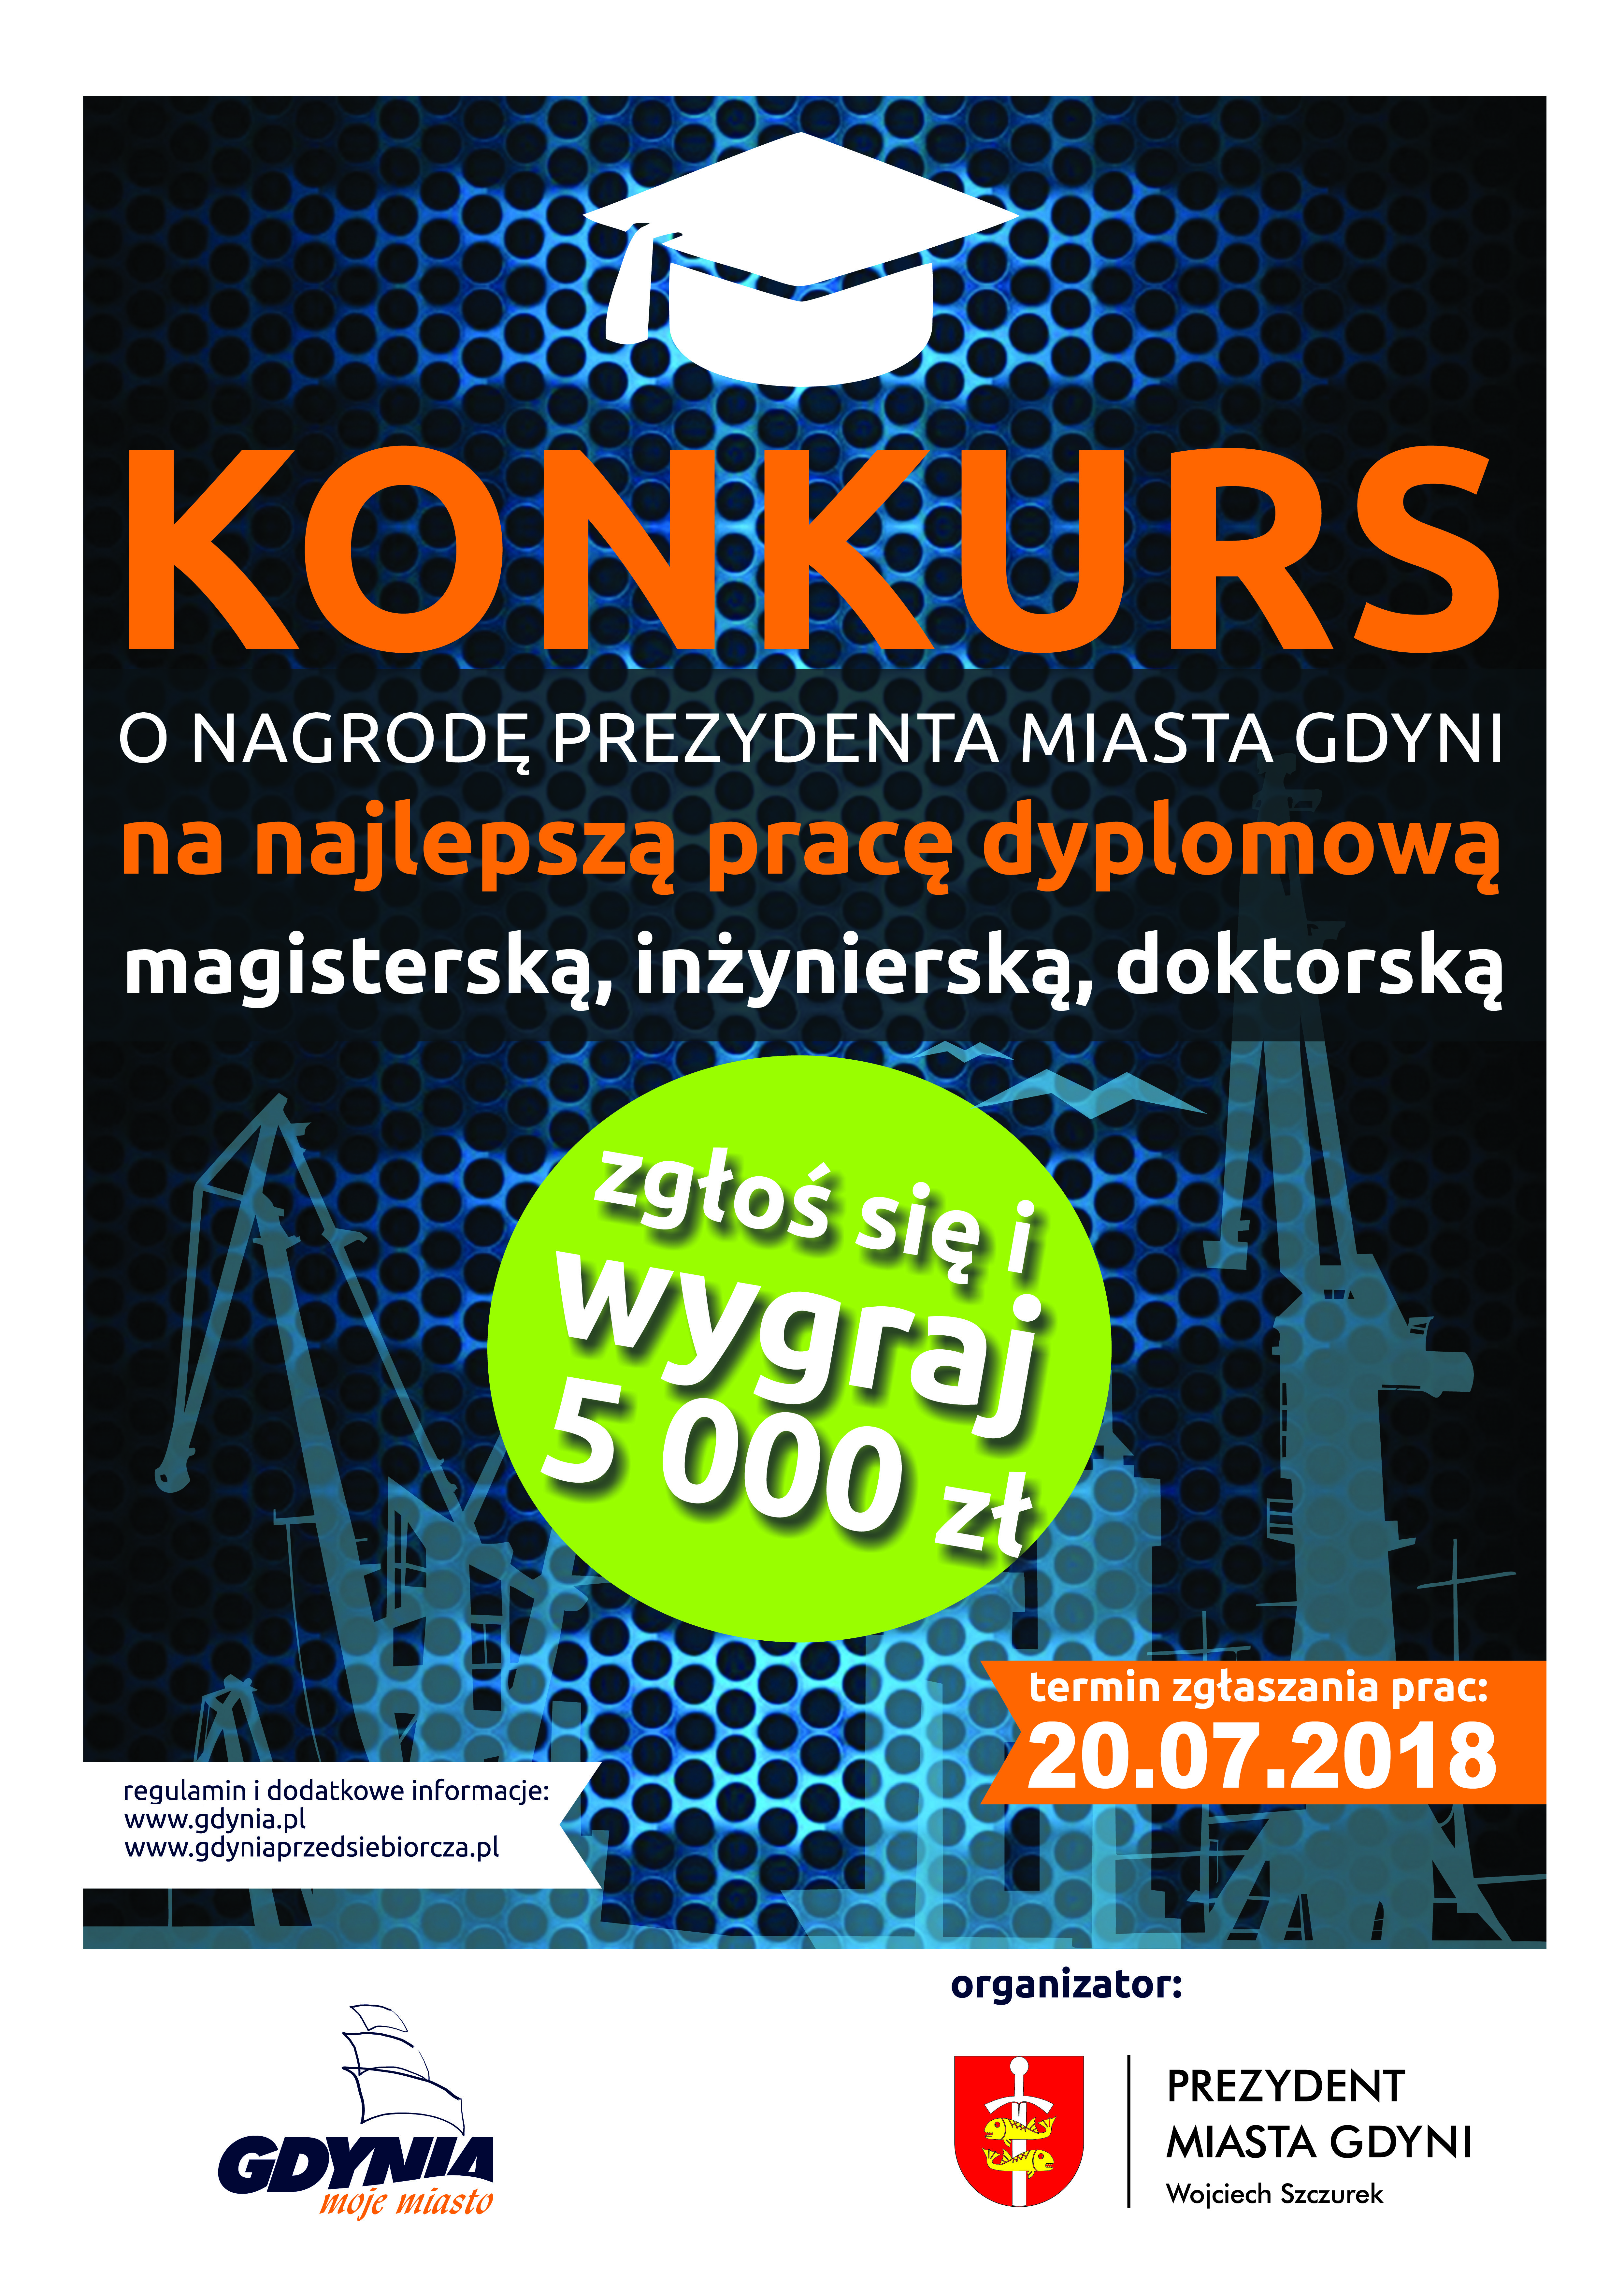 Konkurs o nagrodę Prezydenta Miasta Gdyni na najlepszą pracę dyplomową 2018